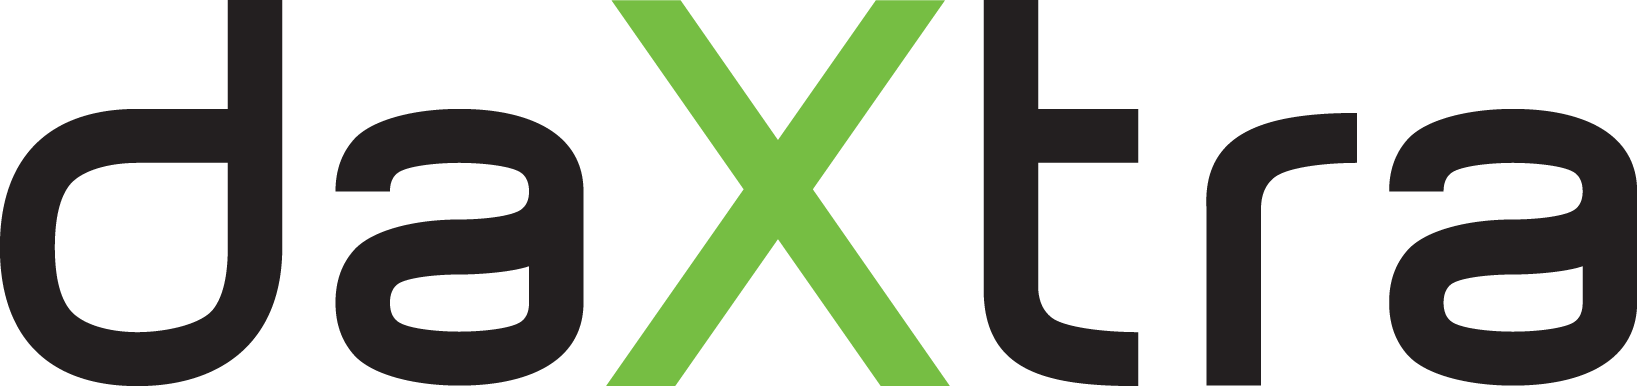 DaXtra_logo_2021